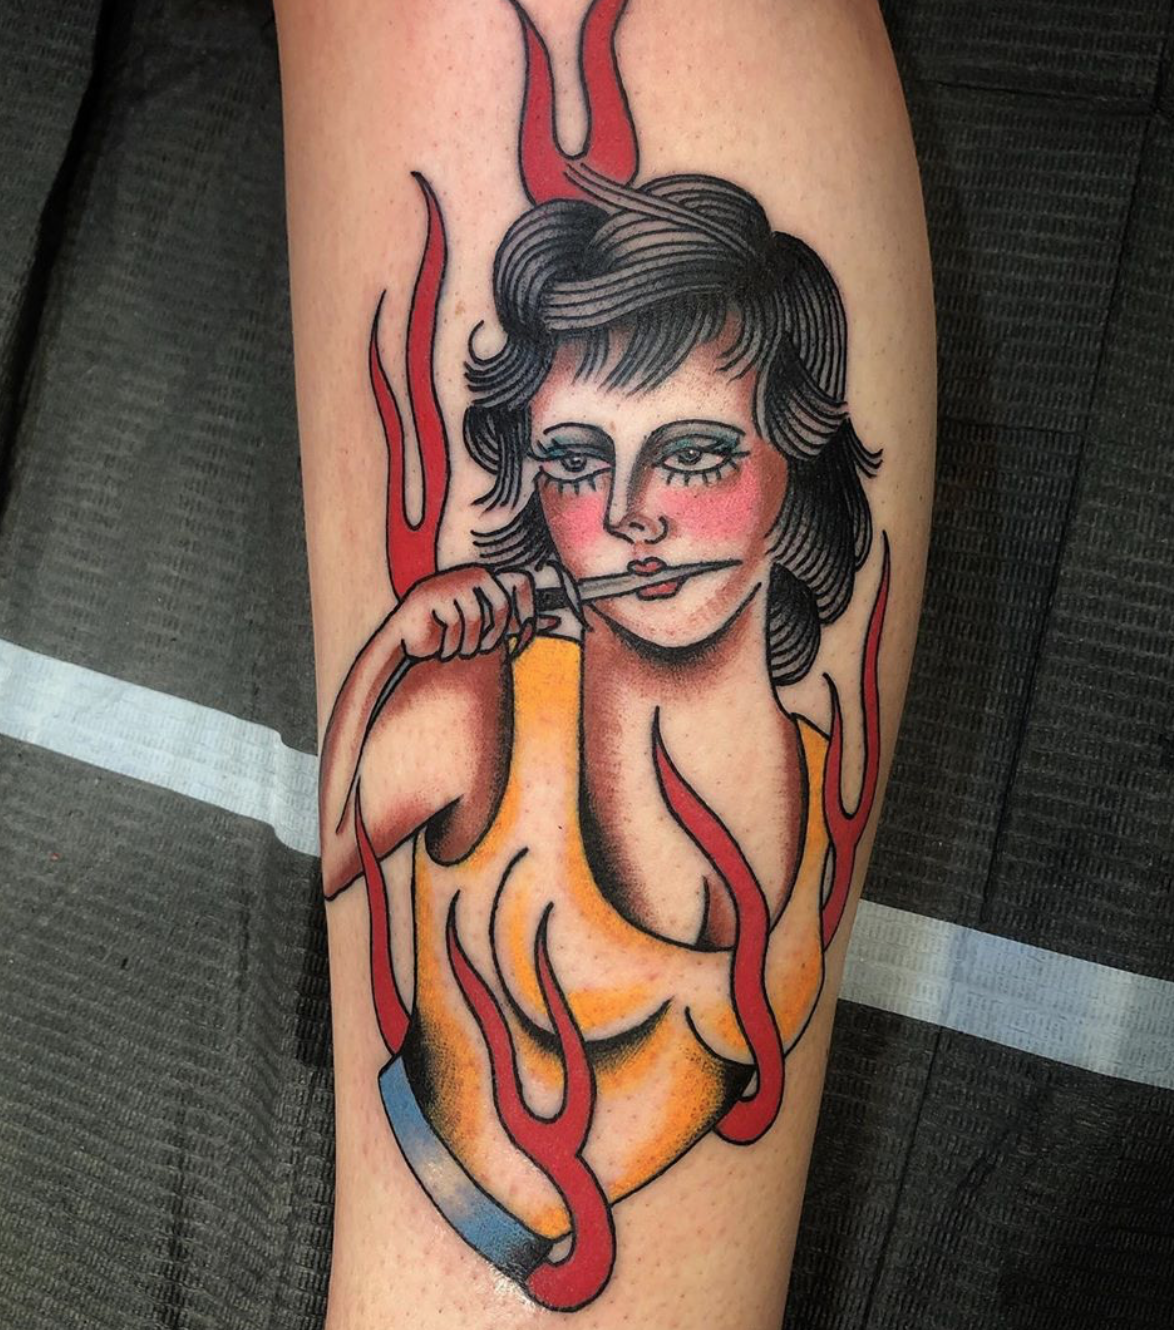 Fire lady by Jessamyn Pusatory